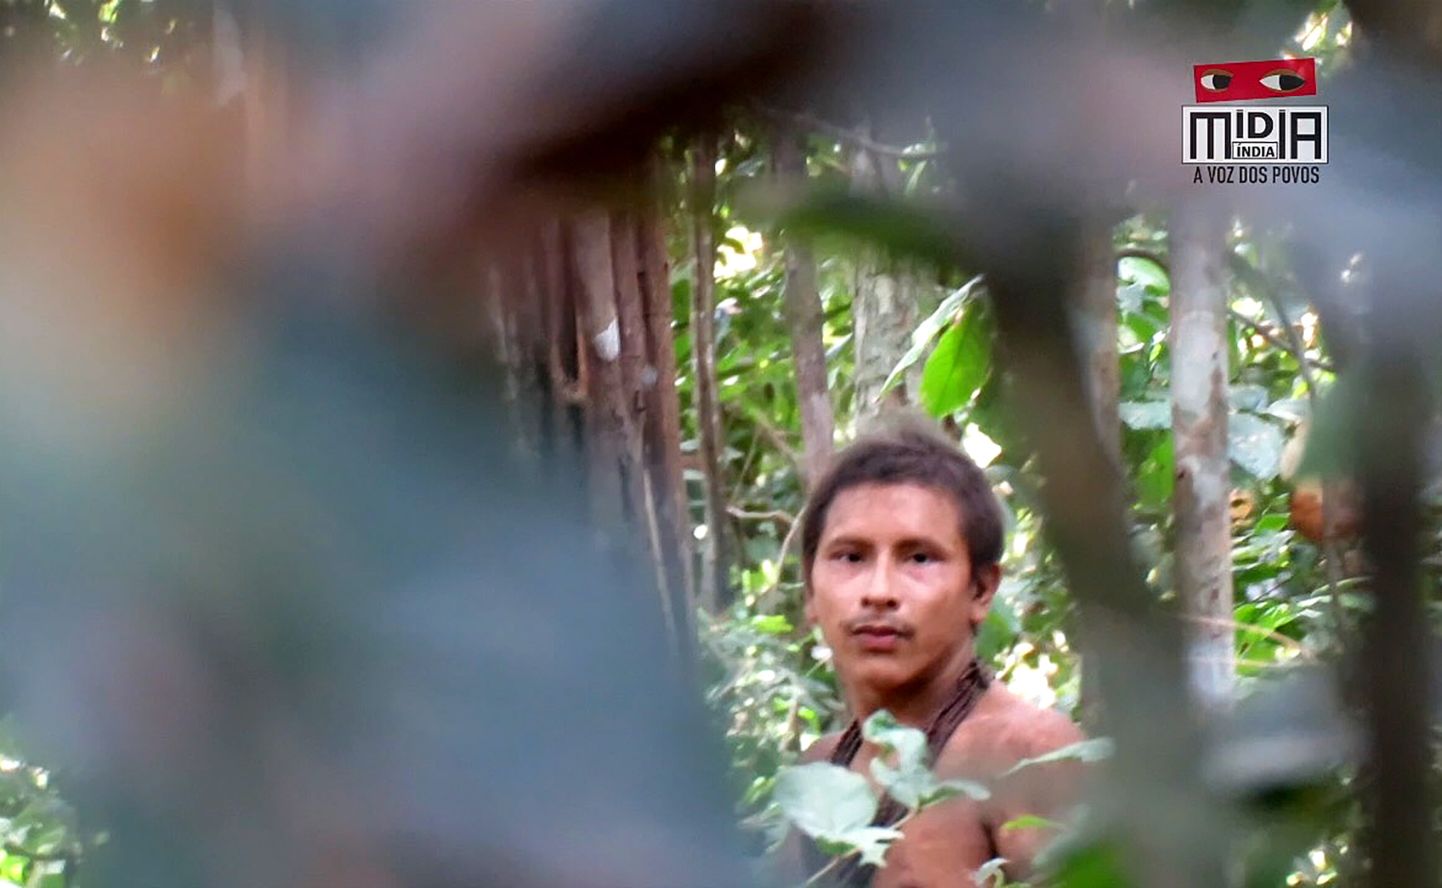 Kuvatõmmis videost, mis jäädvustas Amazonase dšunglis jahimehe, kes kuulub väljasuremisohus hõimu